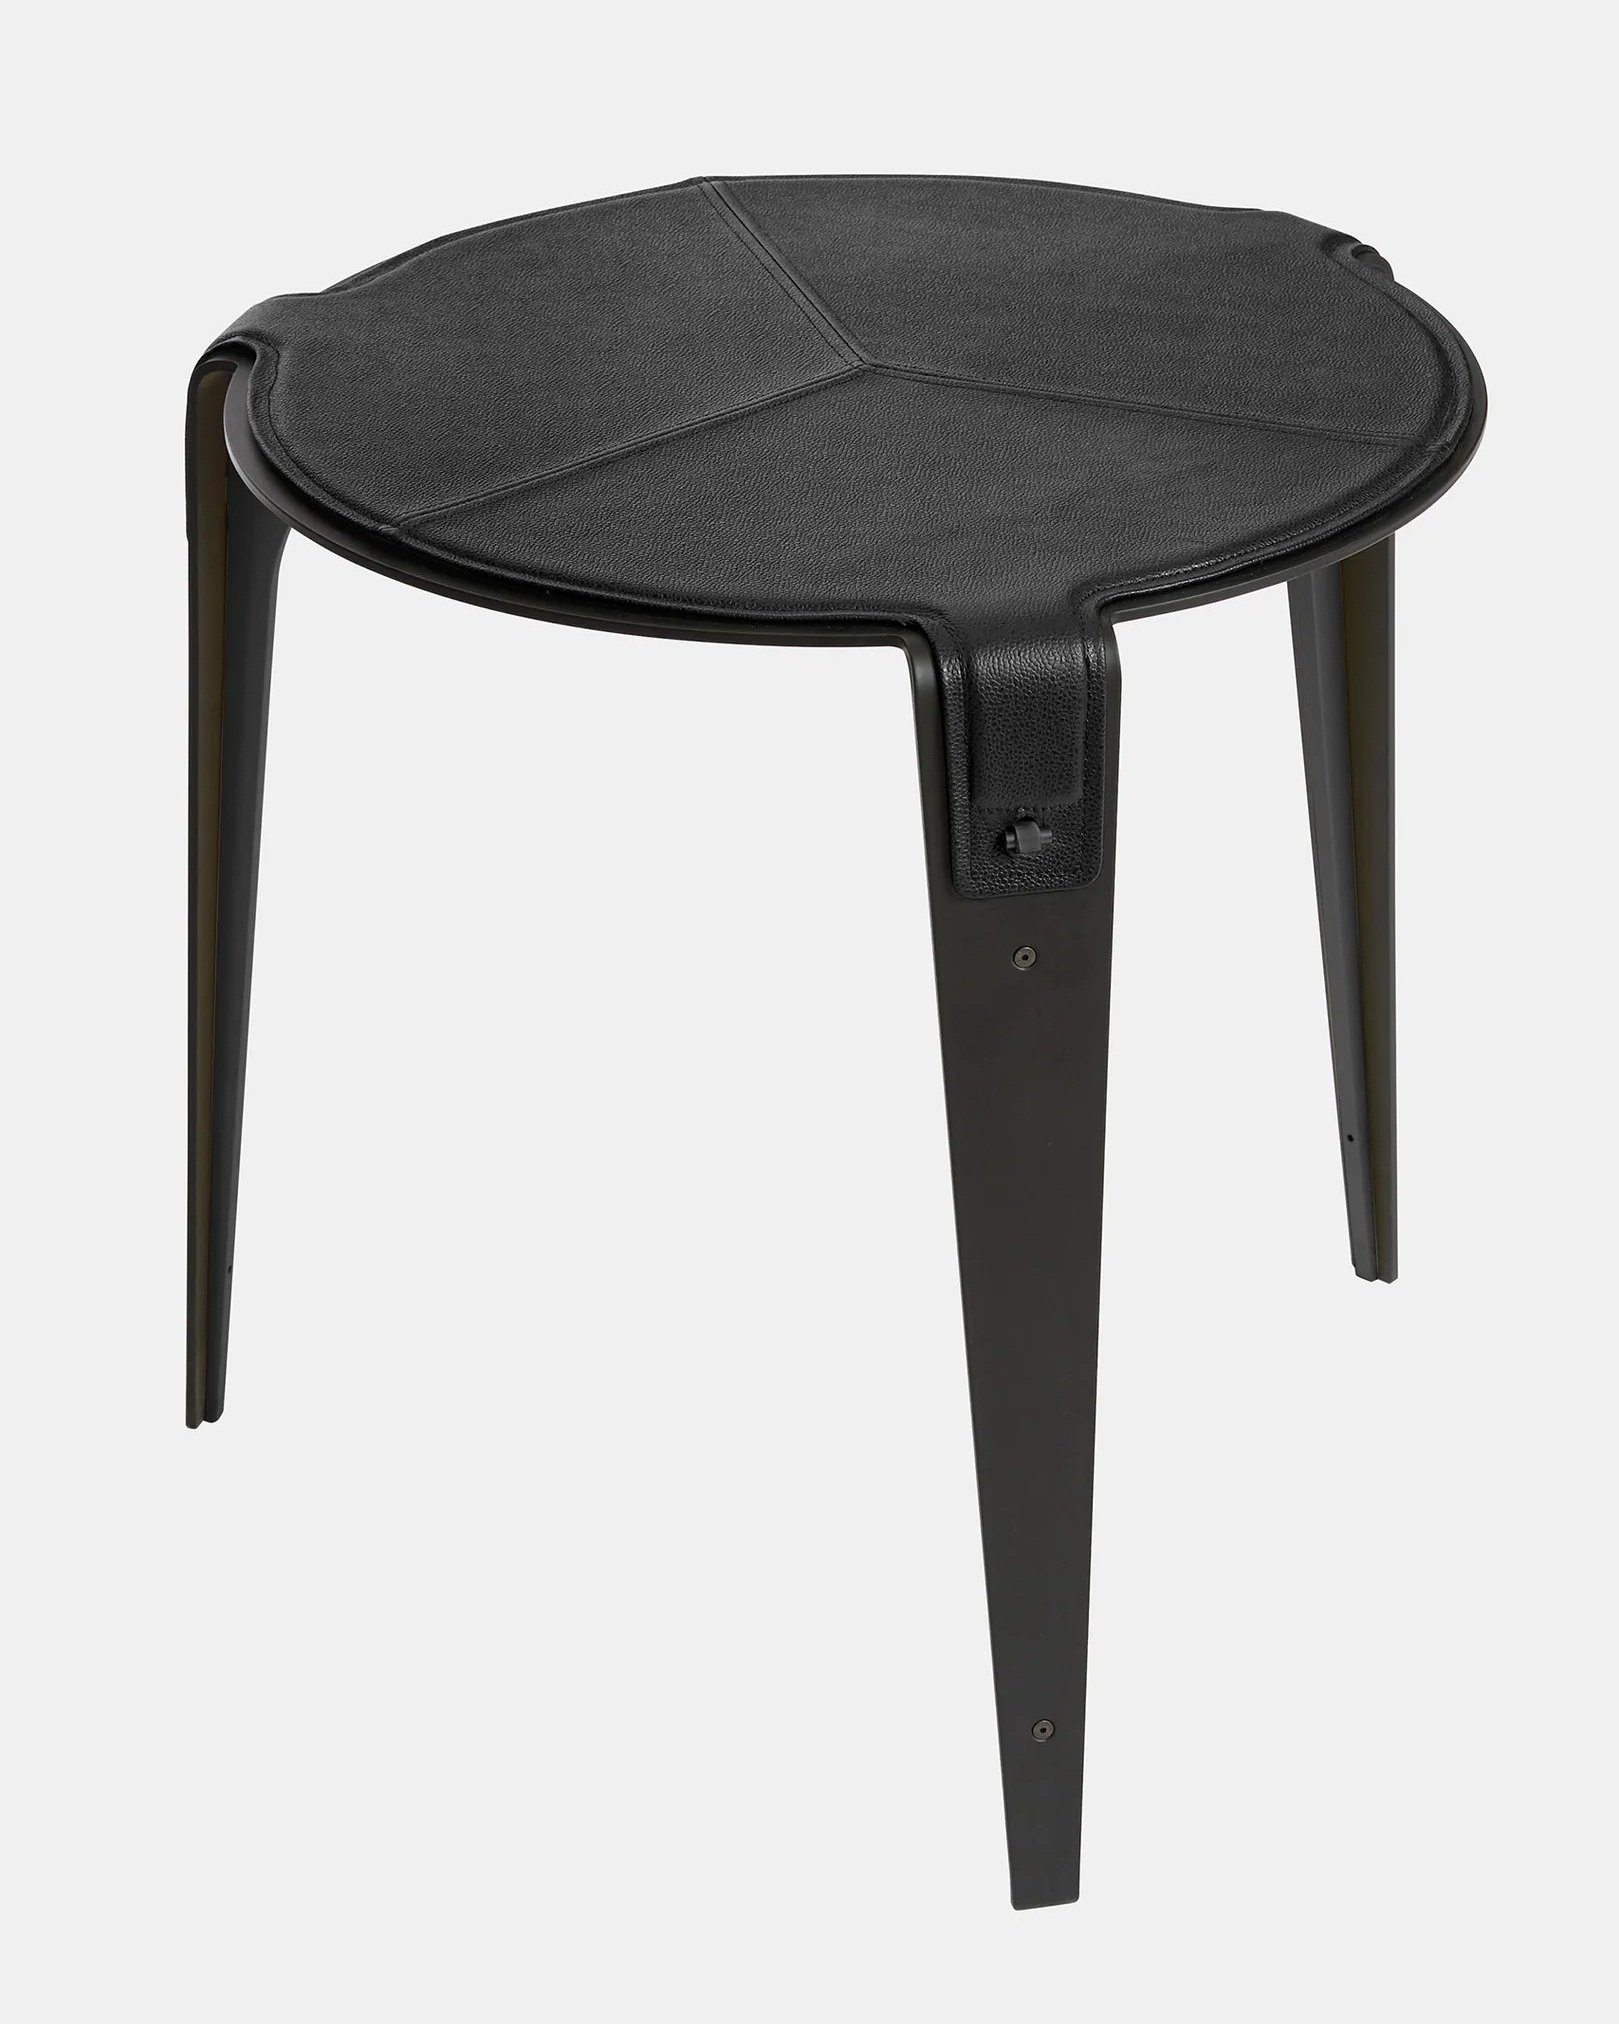 BARDOT SIDE TABLE - BLACK STEEL + BLACK